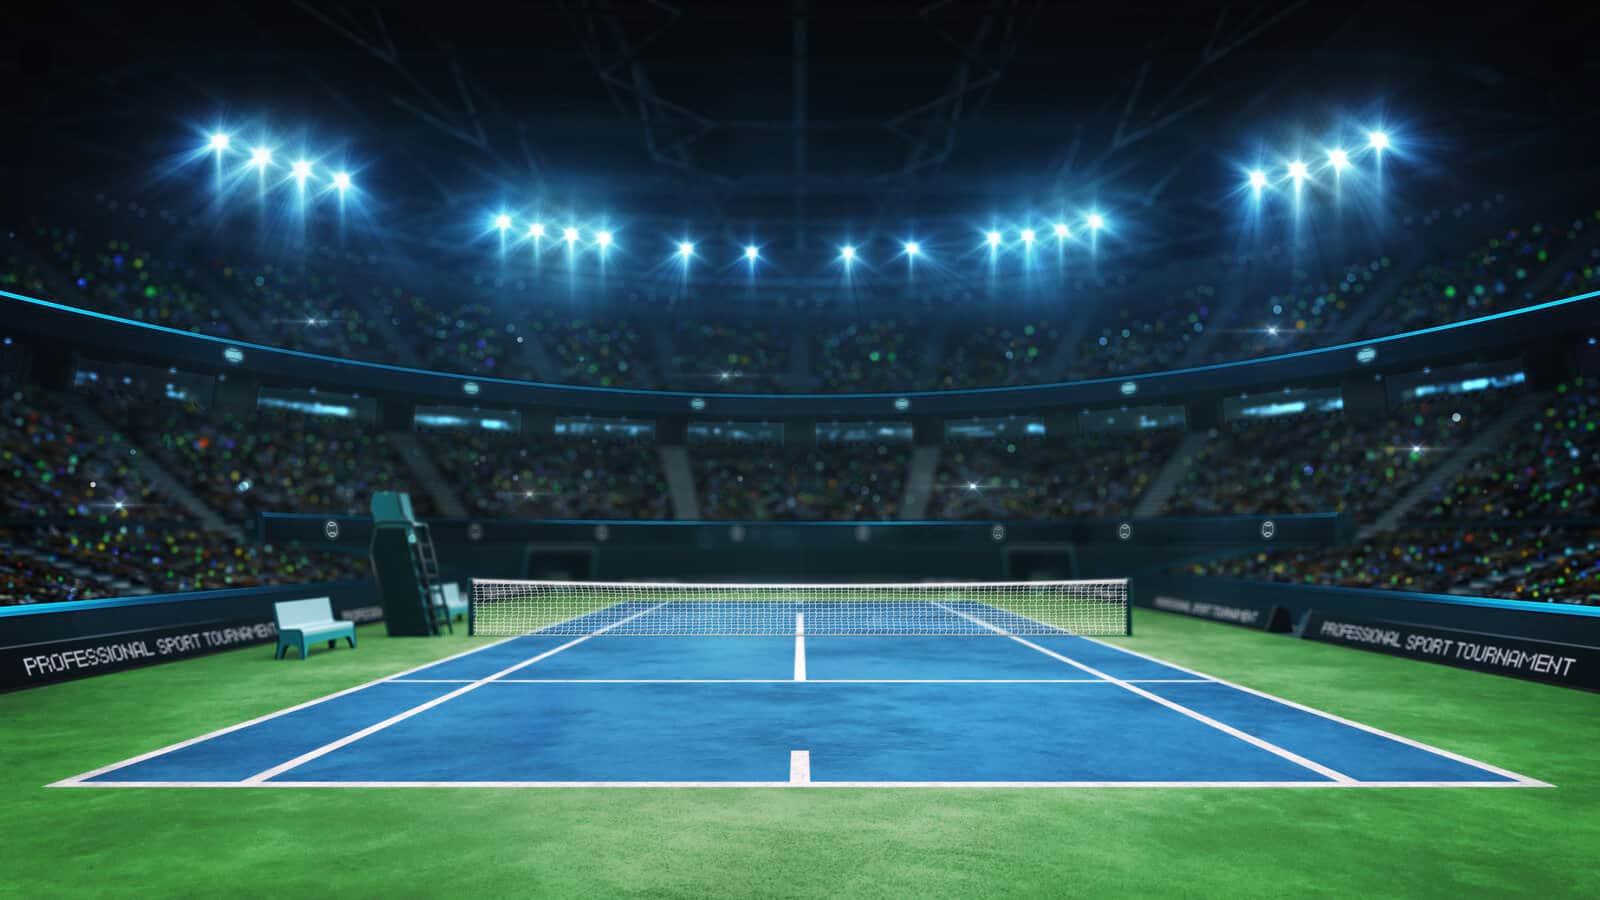 Tennis stadium court